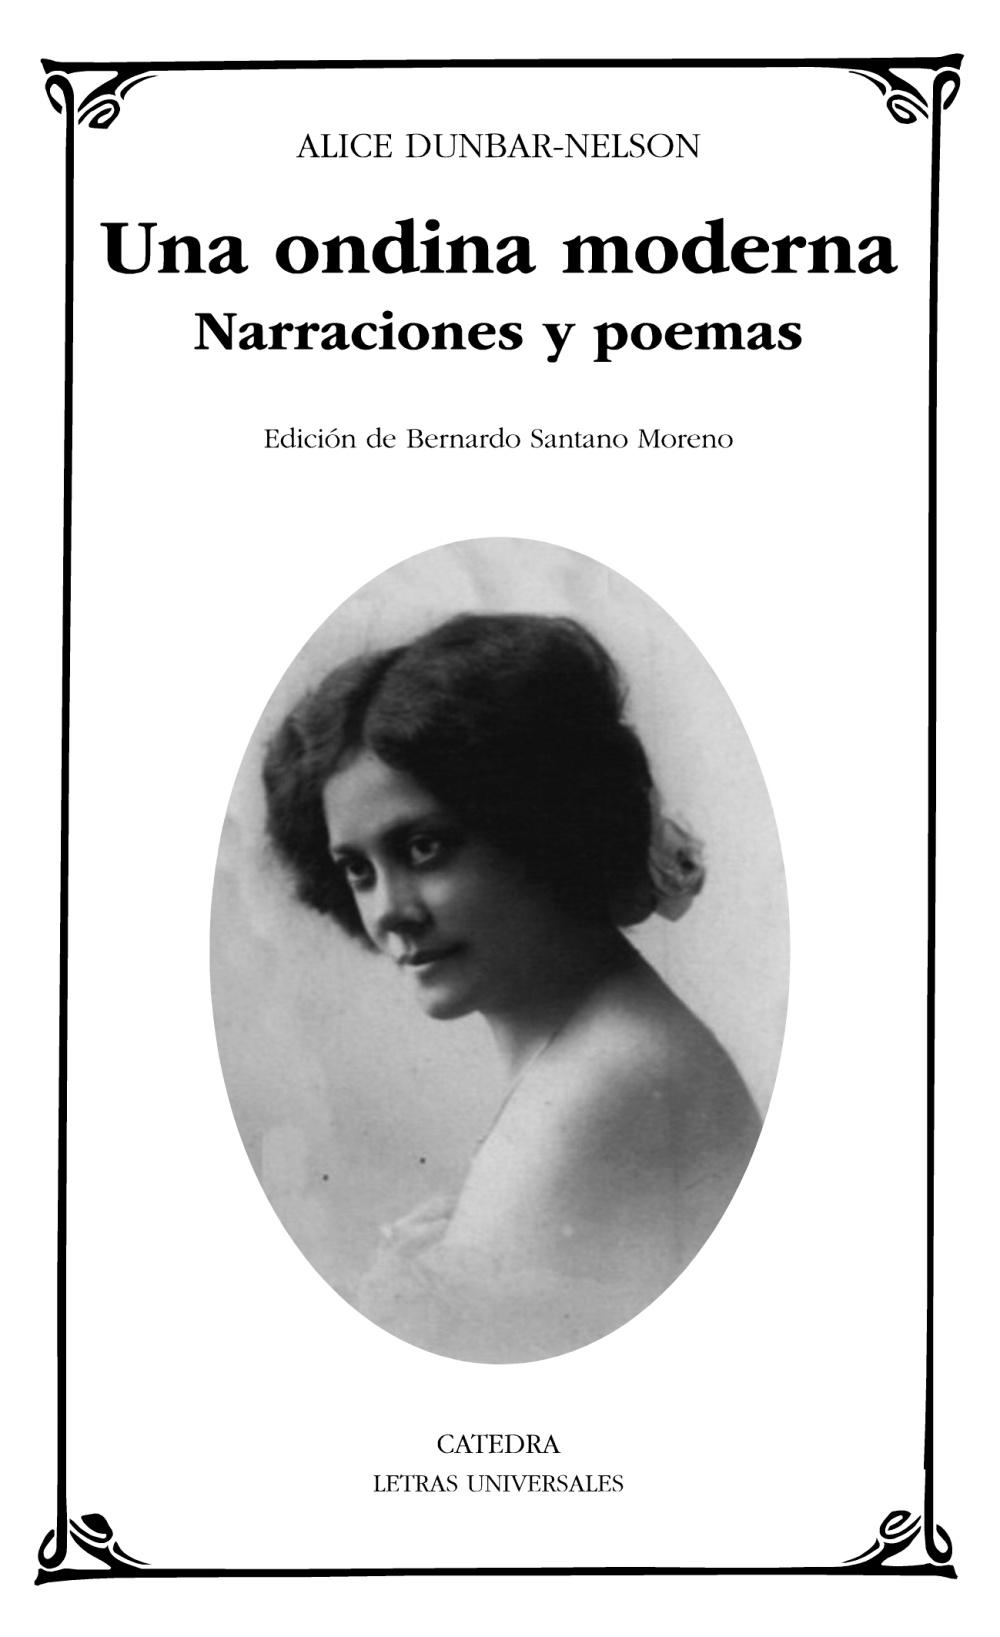 Una ondina moderna "Narraciones y poemas". 